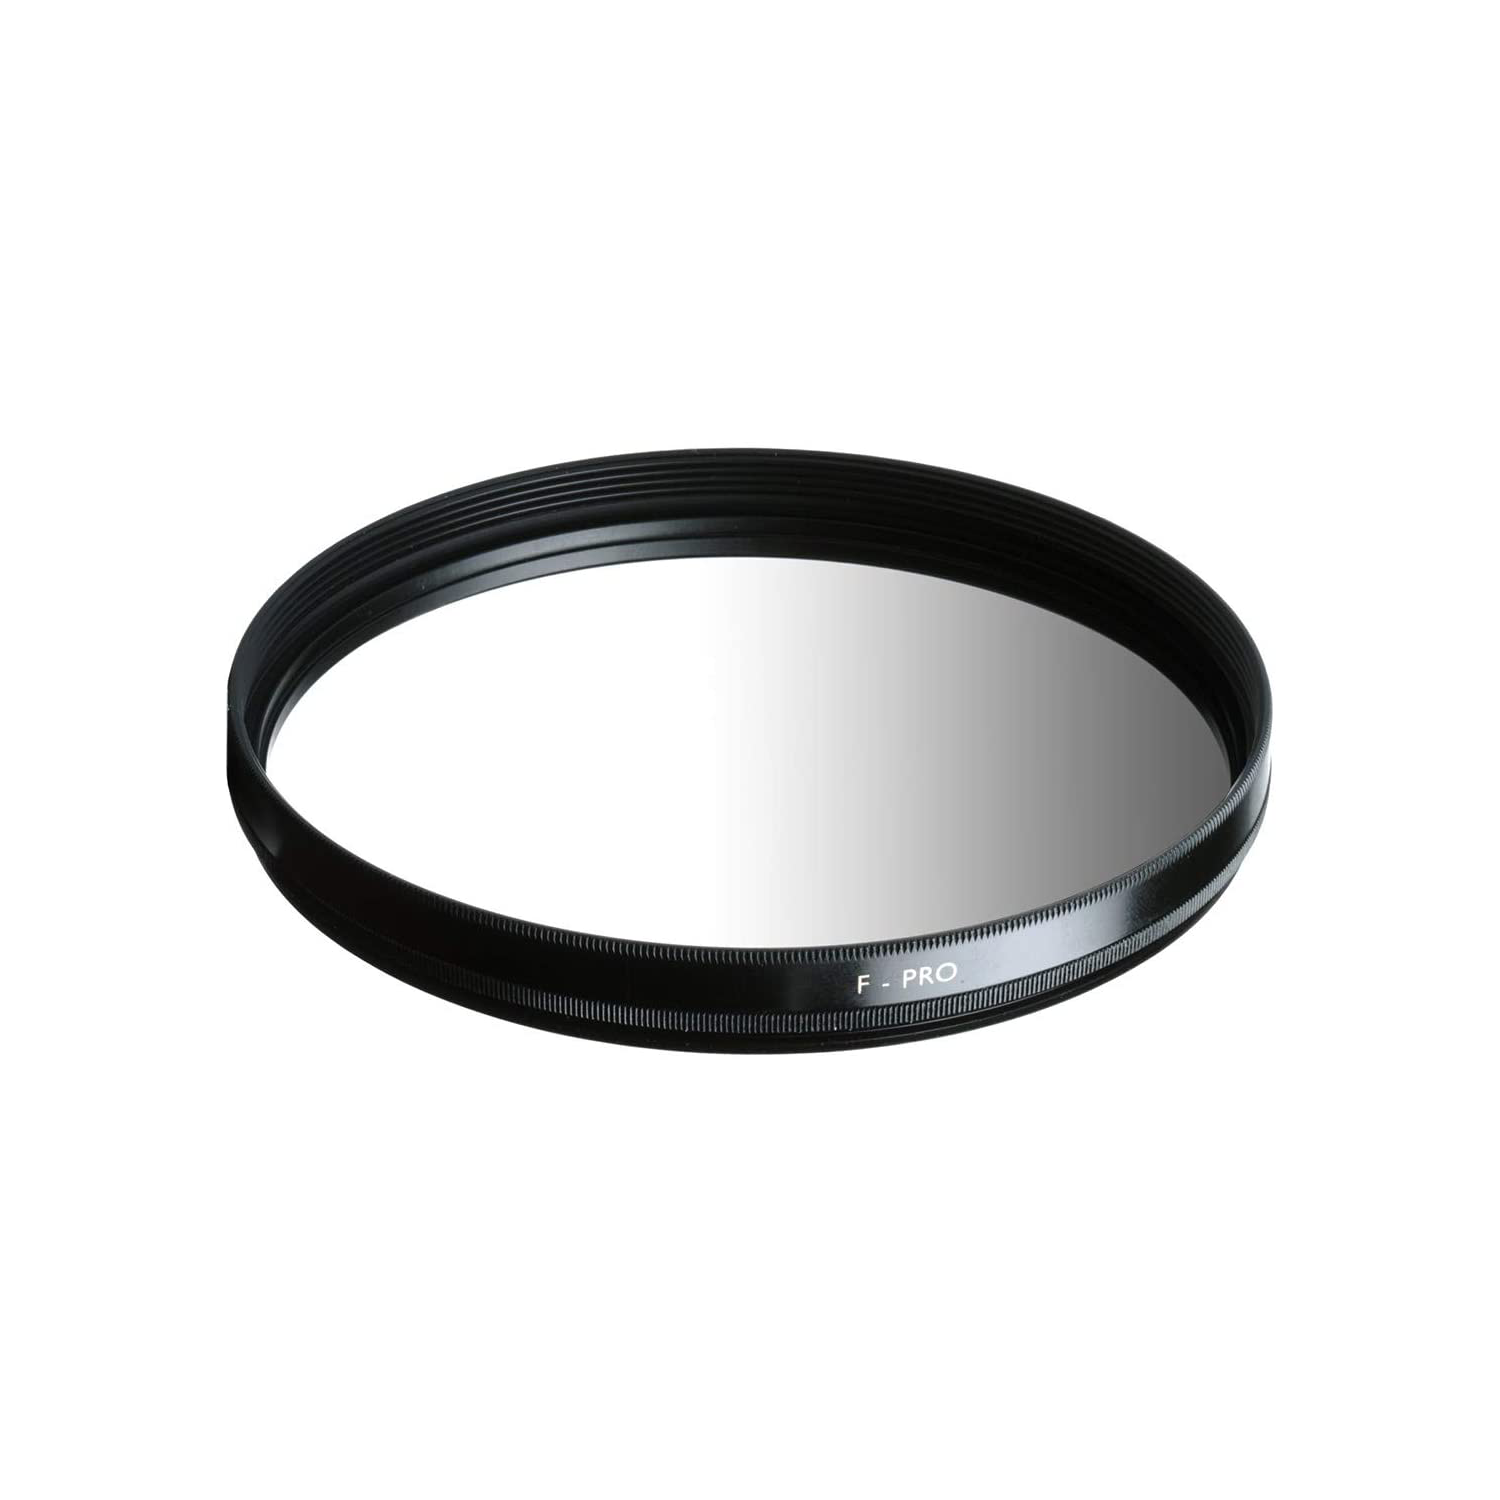 B + w filtre gradué gris 702 2x - 67 mm